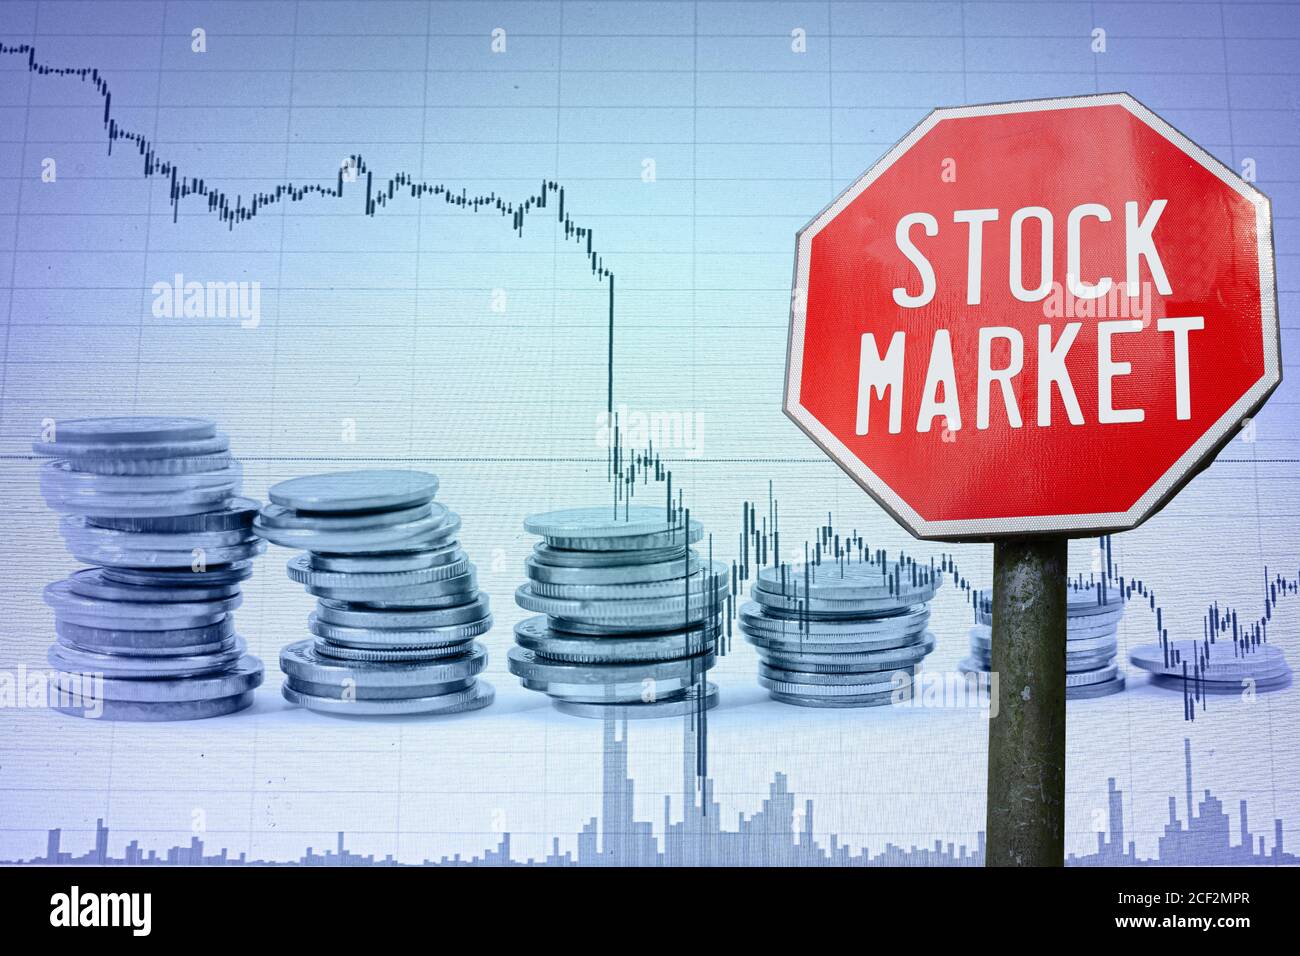 Aktienmarkt Zeichen auf Wirtschaft Hintergrund - Grafik und Münzen. Finanzcrash in der Weltwirtschaft wegen Coronavirus. Globale Wirtschaftskrise, Rezession. Stockfoto